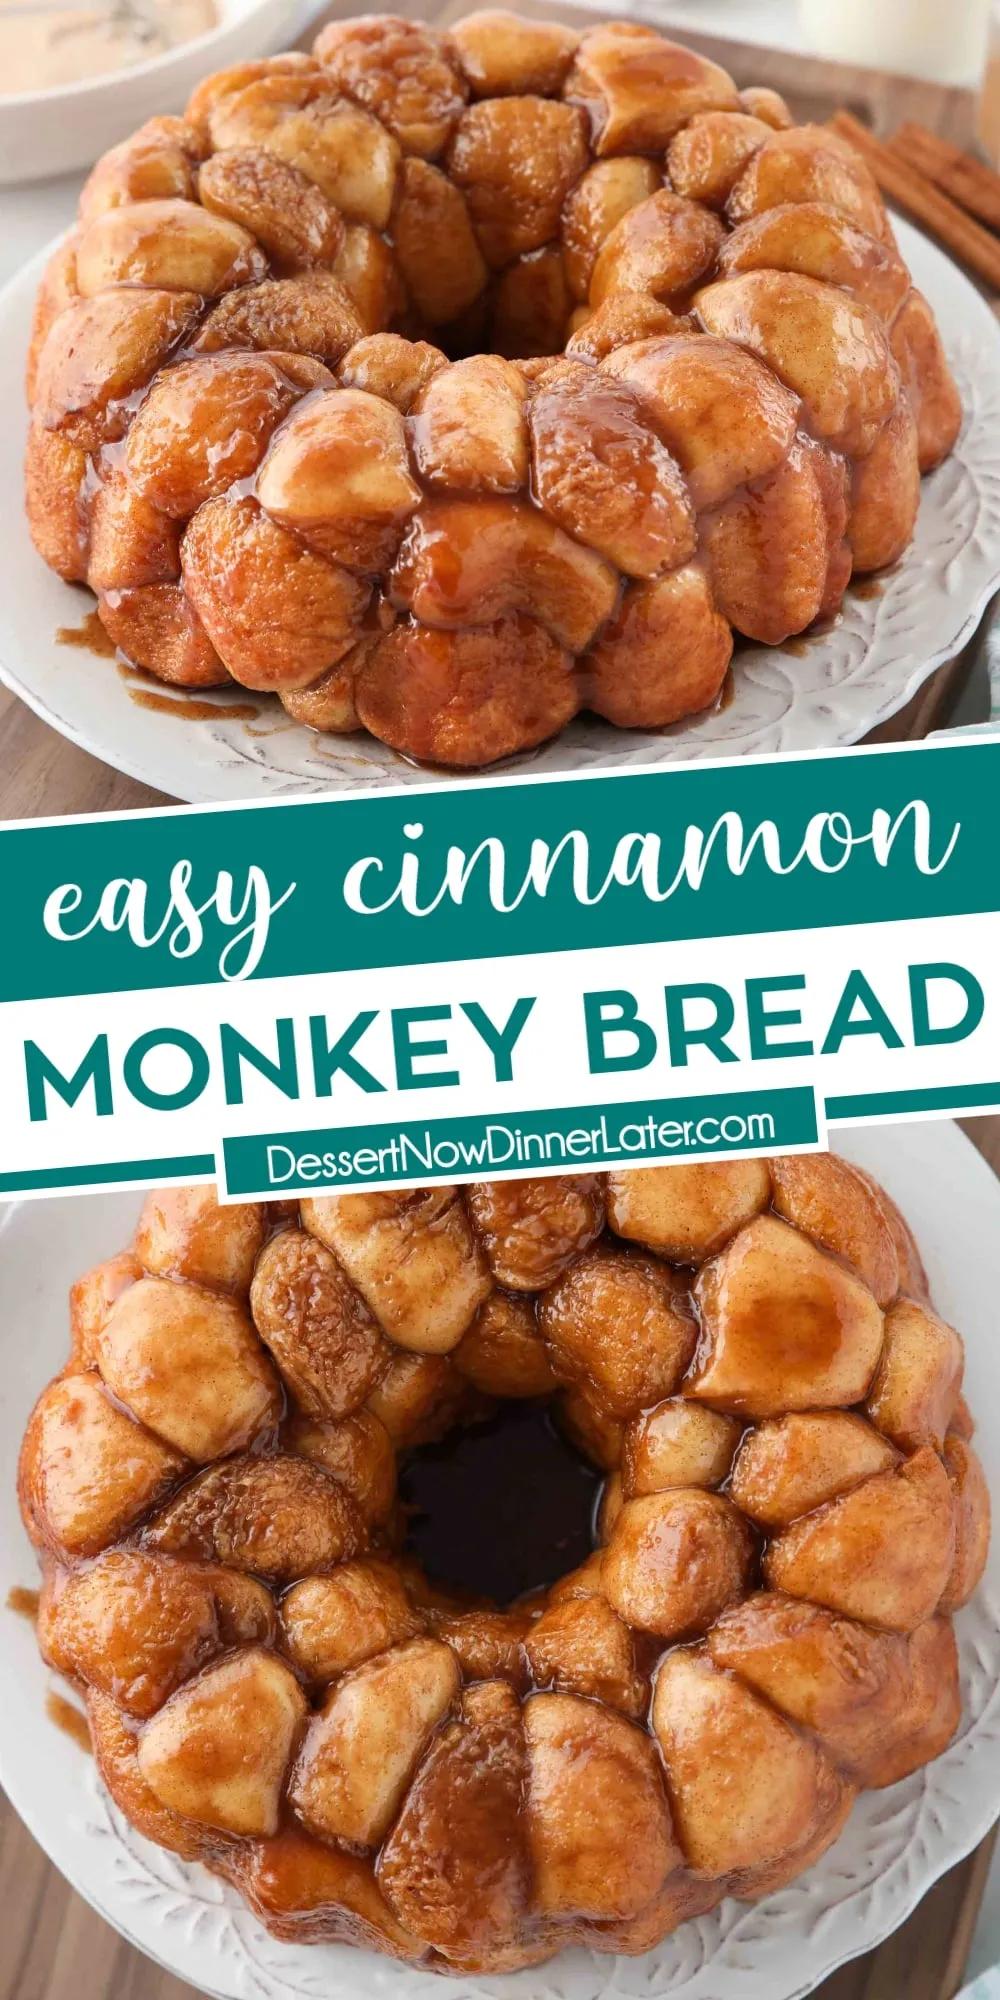 Easy Monkey Bread Recipe + Video | Dessert Now Dinner Later